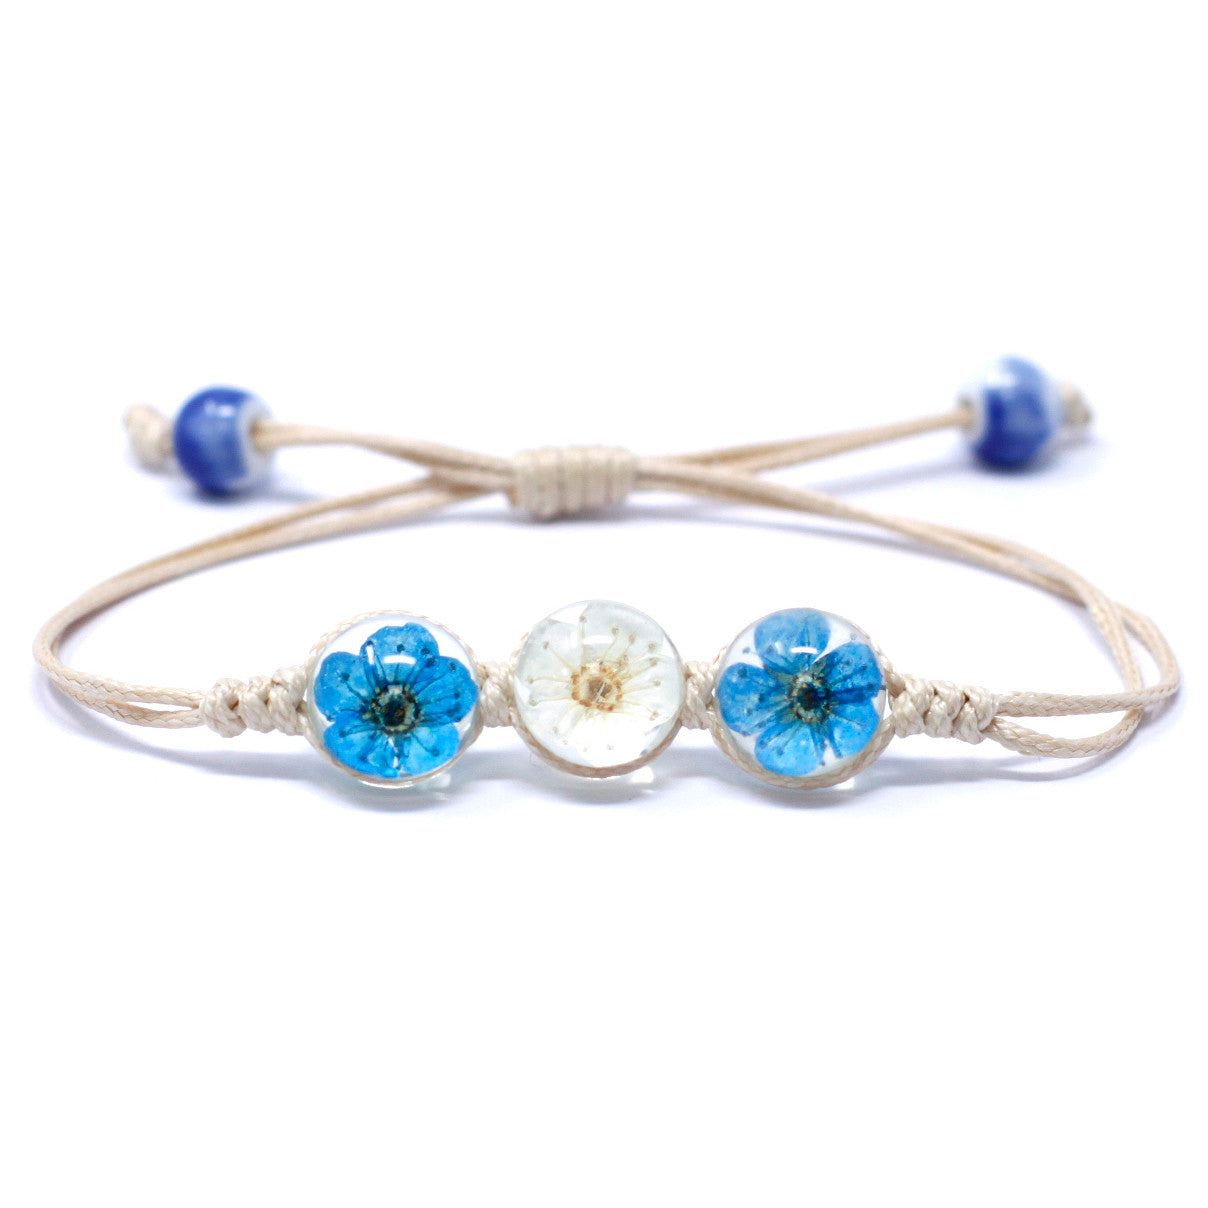 Pressed Flowers Jewelry - Tri-Flower Bracelet